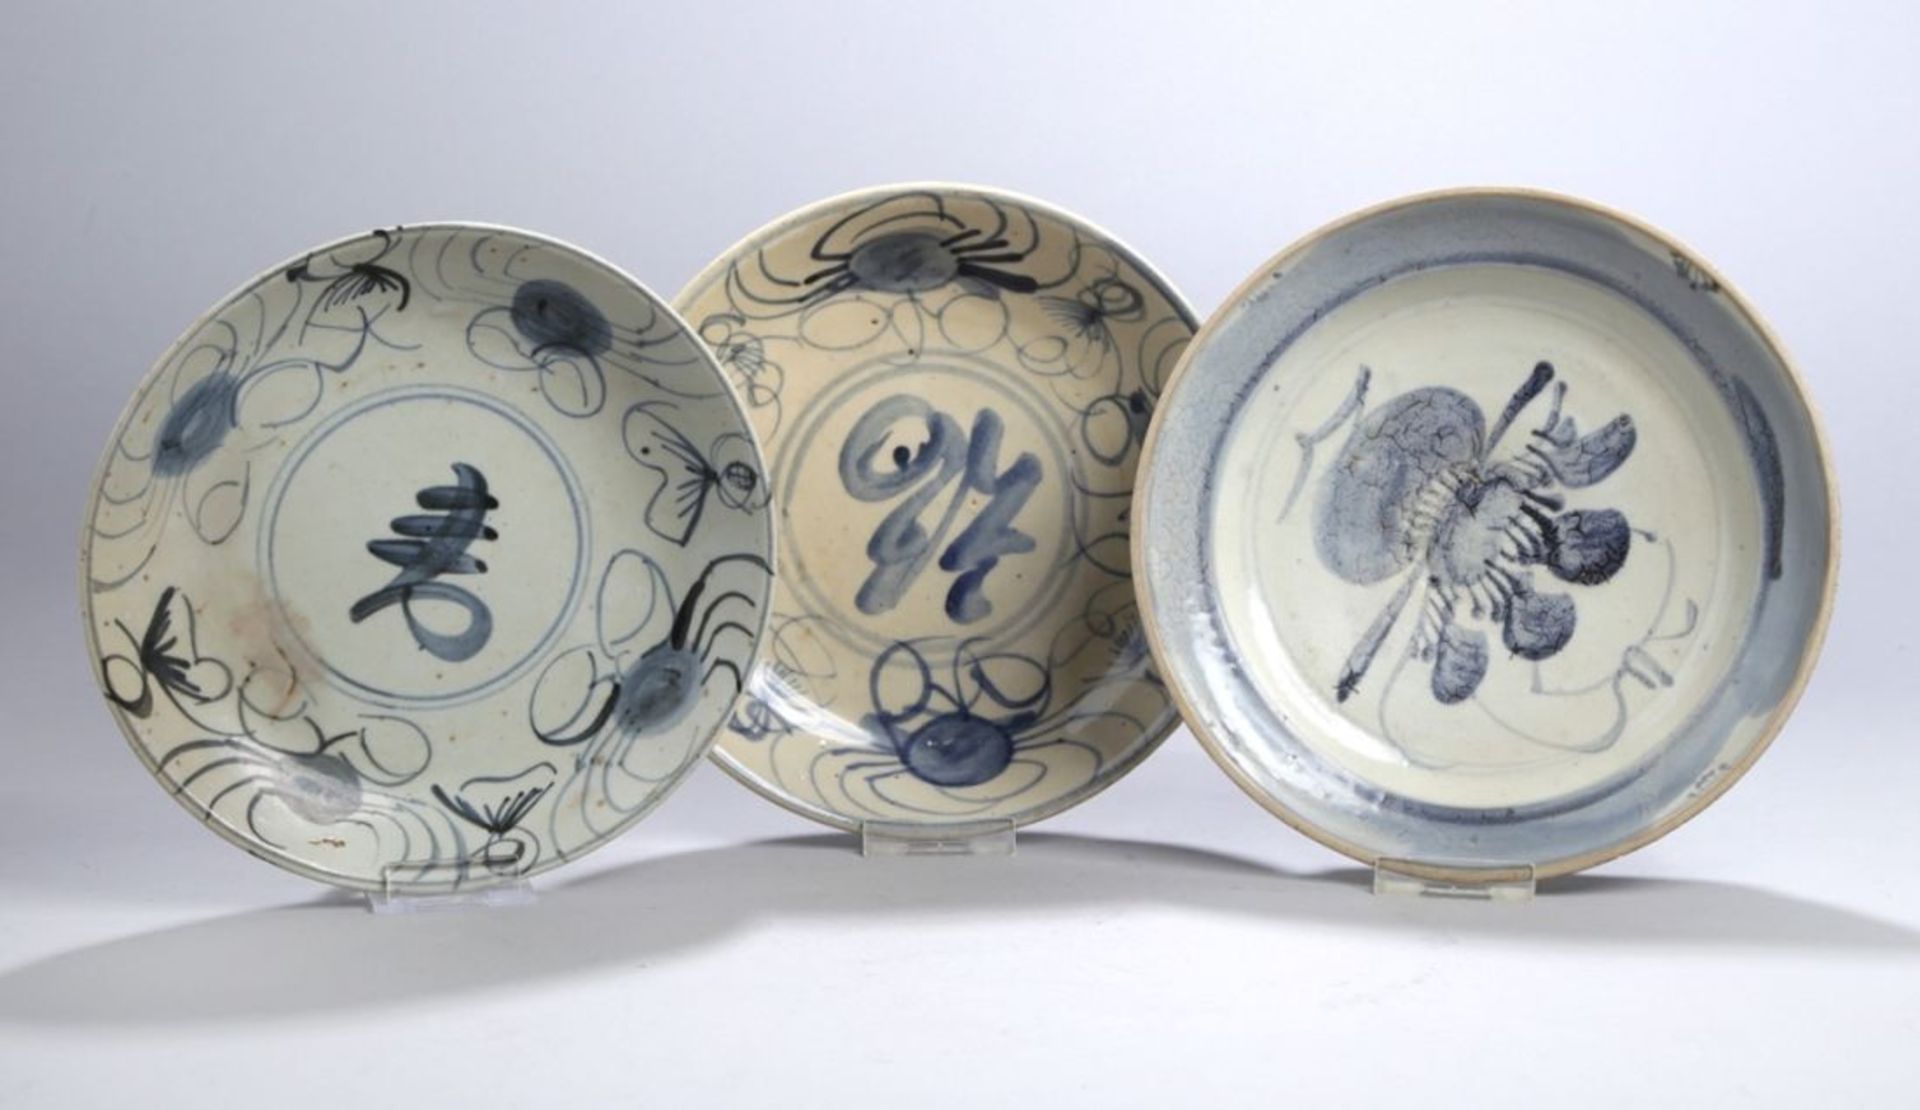 Drei Porzellan-Zierteller, China, Ming-Dynastie, runde, gemuldete Formen, unterschiedlichdekori